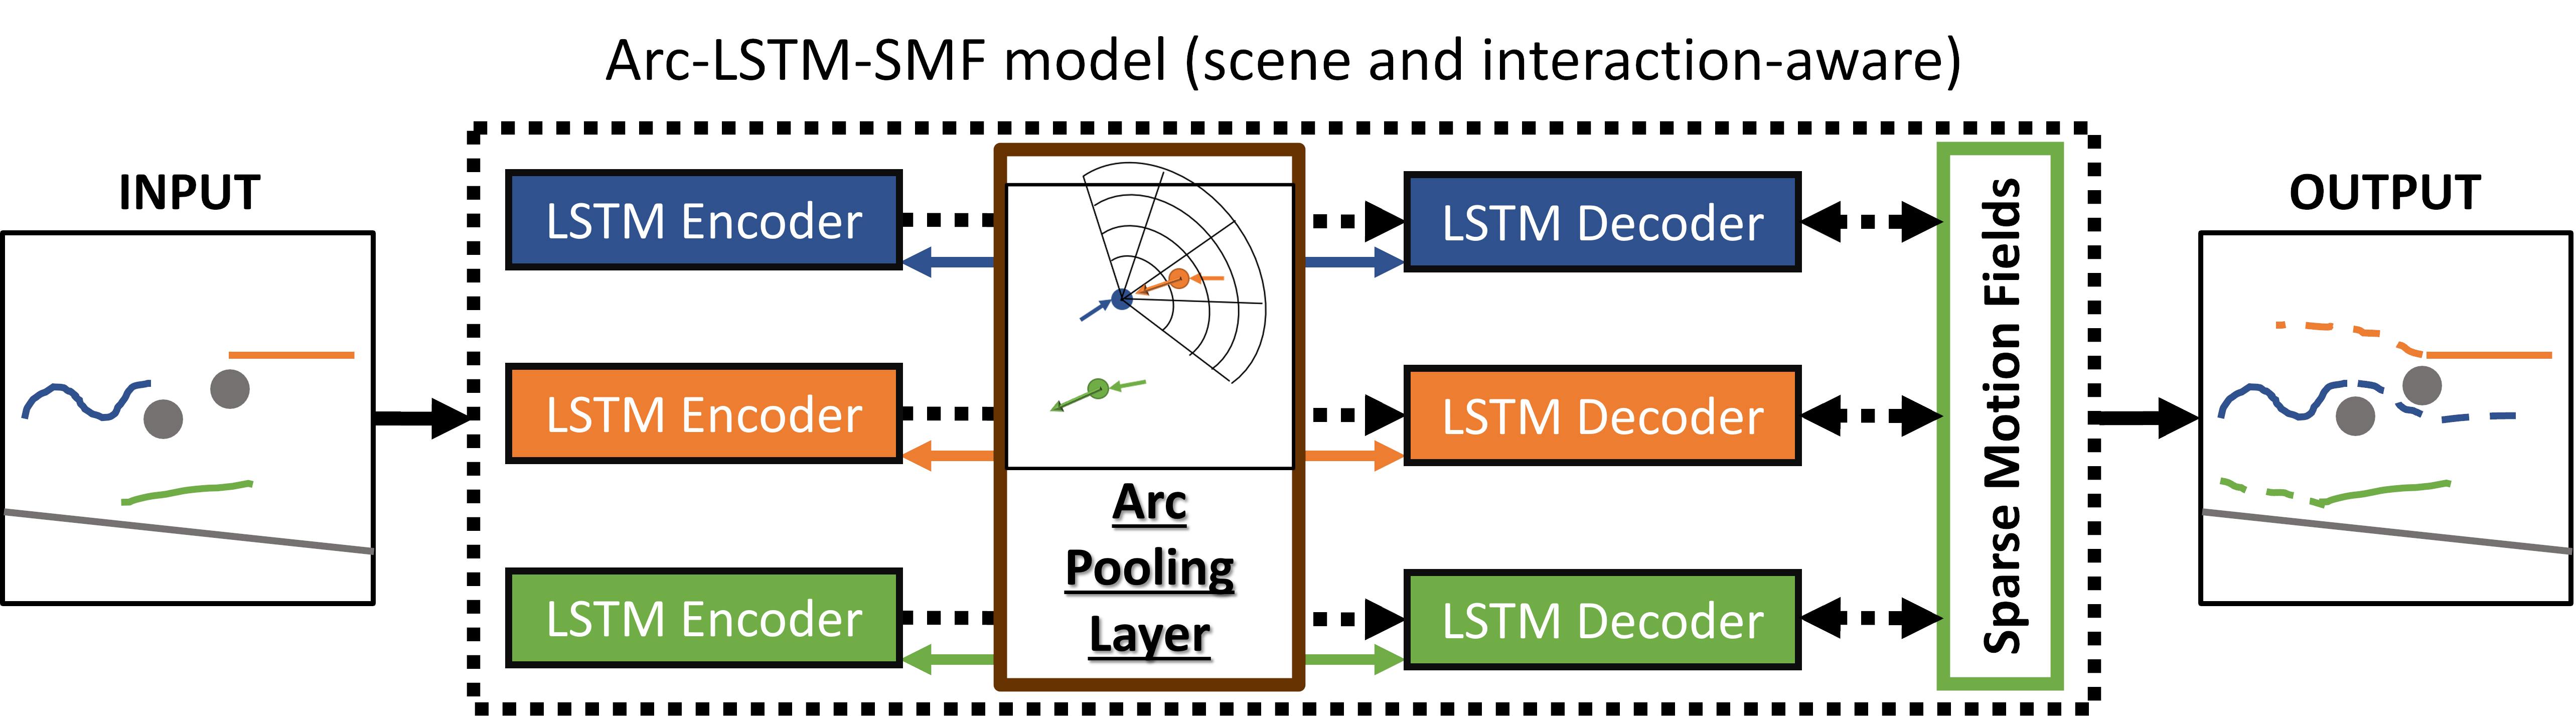 Figure summarizing Arc-LSTM-SMF model